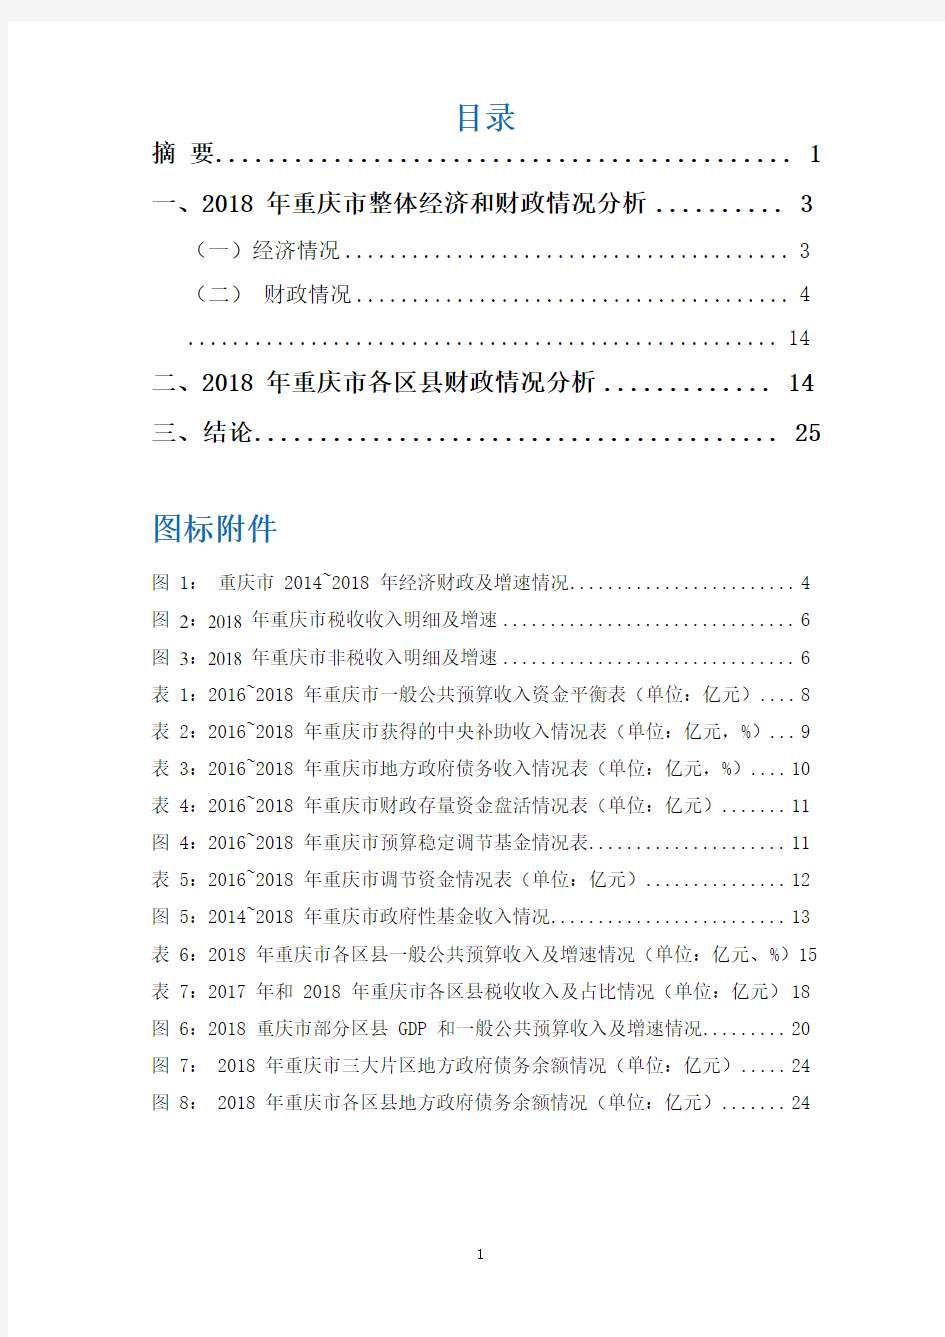 2018-2019年重庆市财政情况解析报告